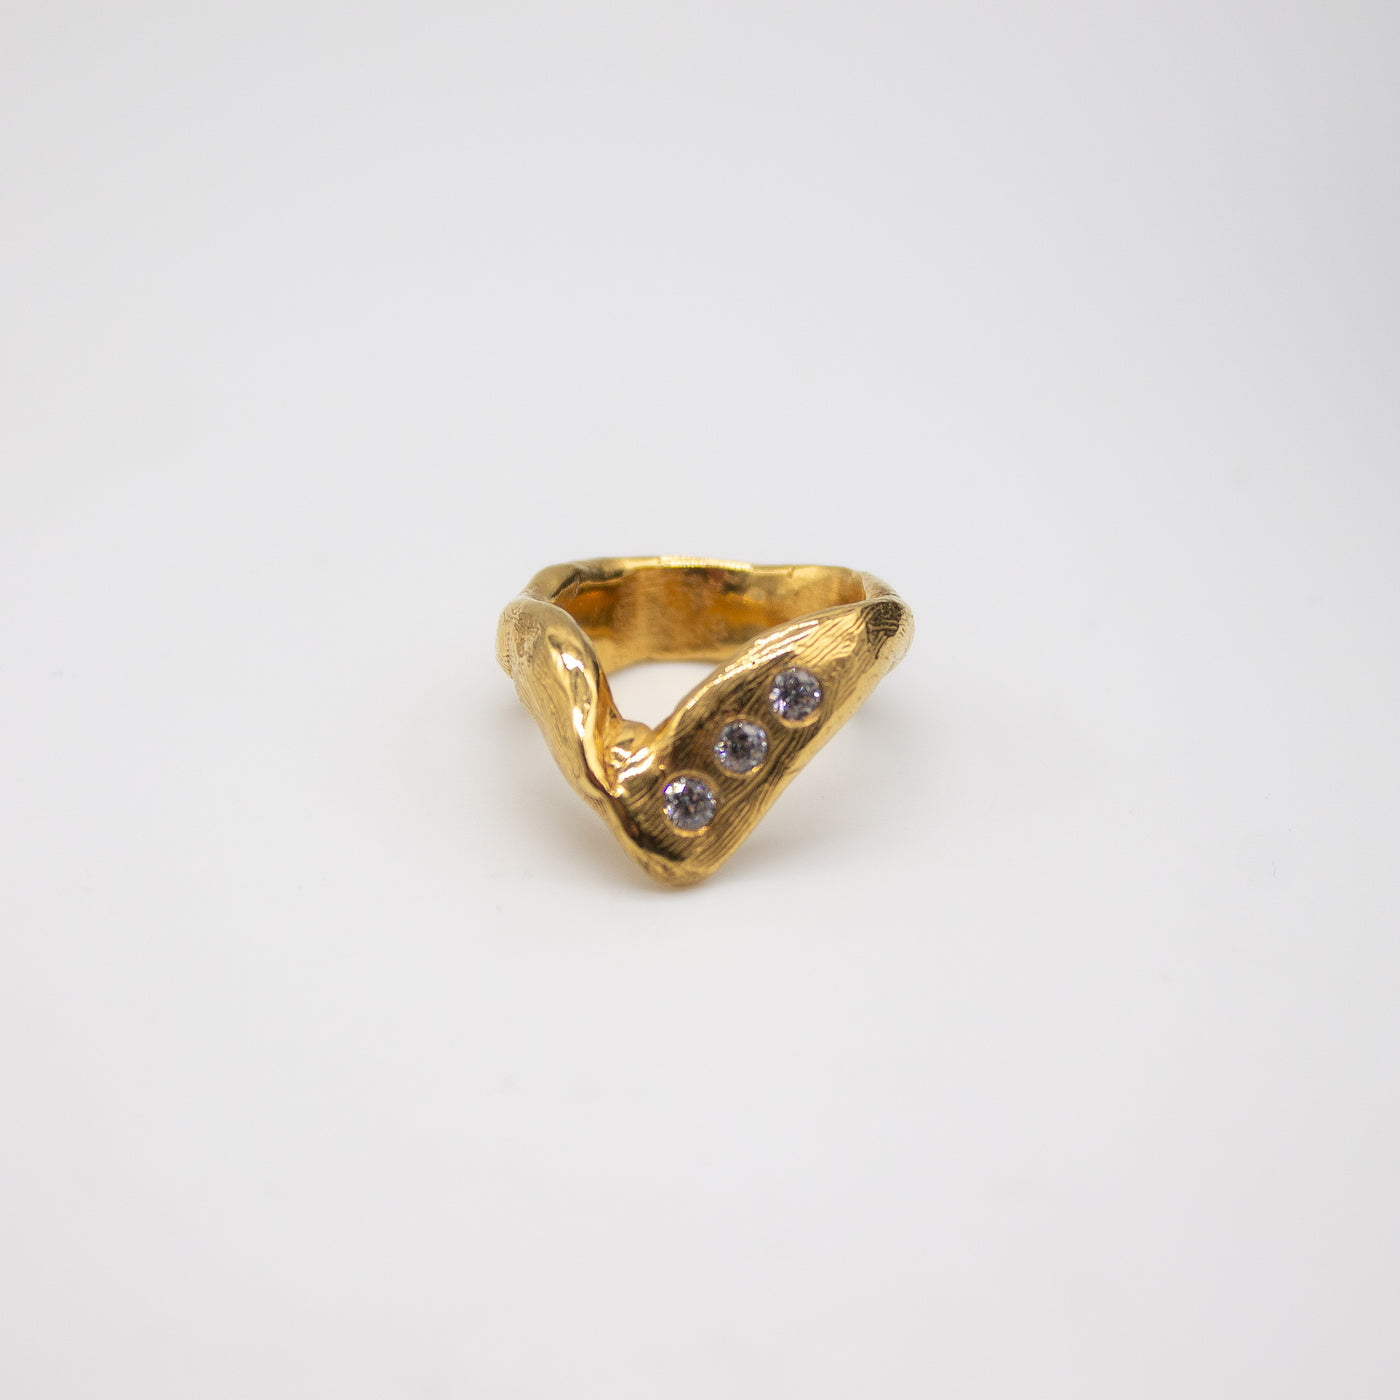 DRONNINGLUND // Ring vergoldet mit 3 eingefassten Zirkoniasteinen